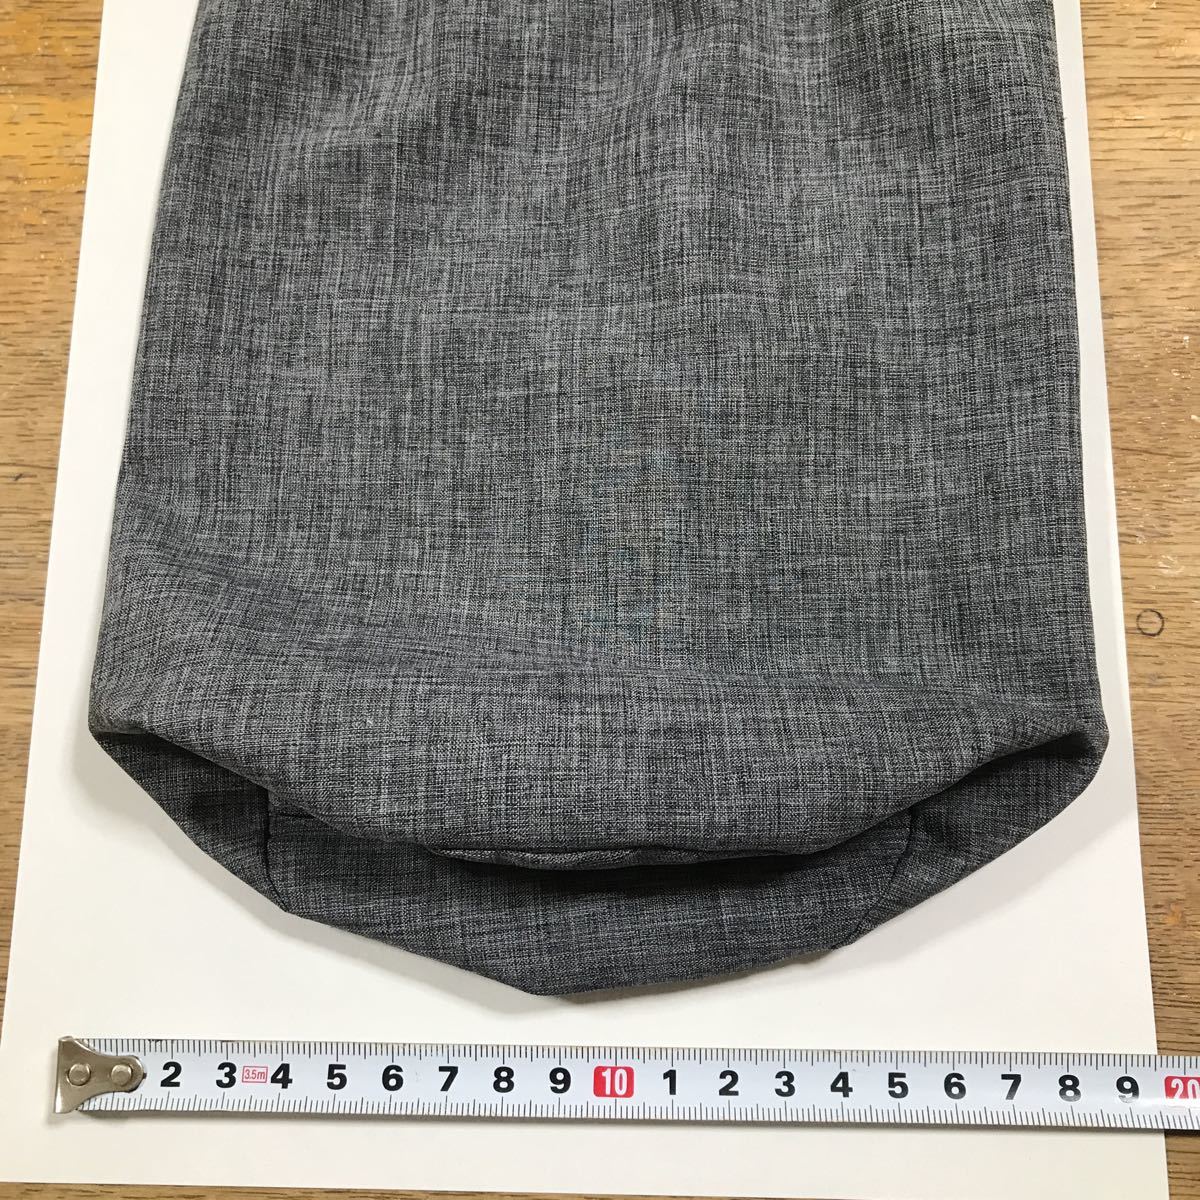  Colombia непромокаемая одежда пакет Homme ni Tec бардачок водонепроницаемый ткань PFG угольно-серый 